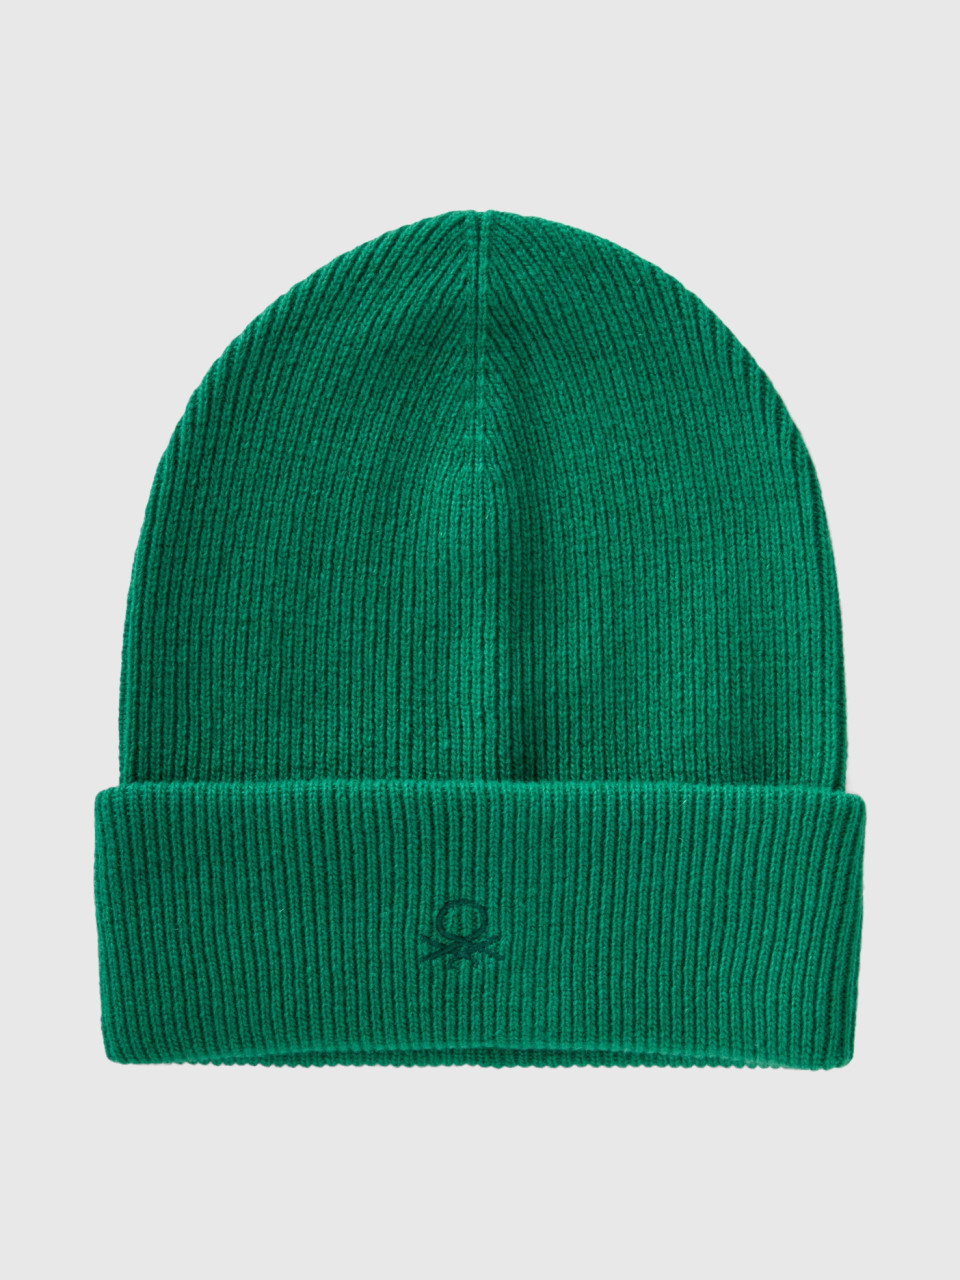 Benetton, Wool Blend Hat, Green, Kids